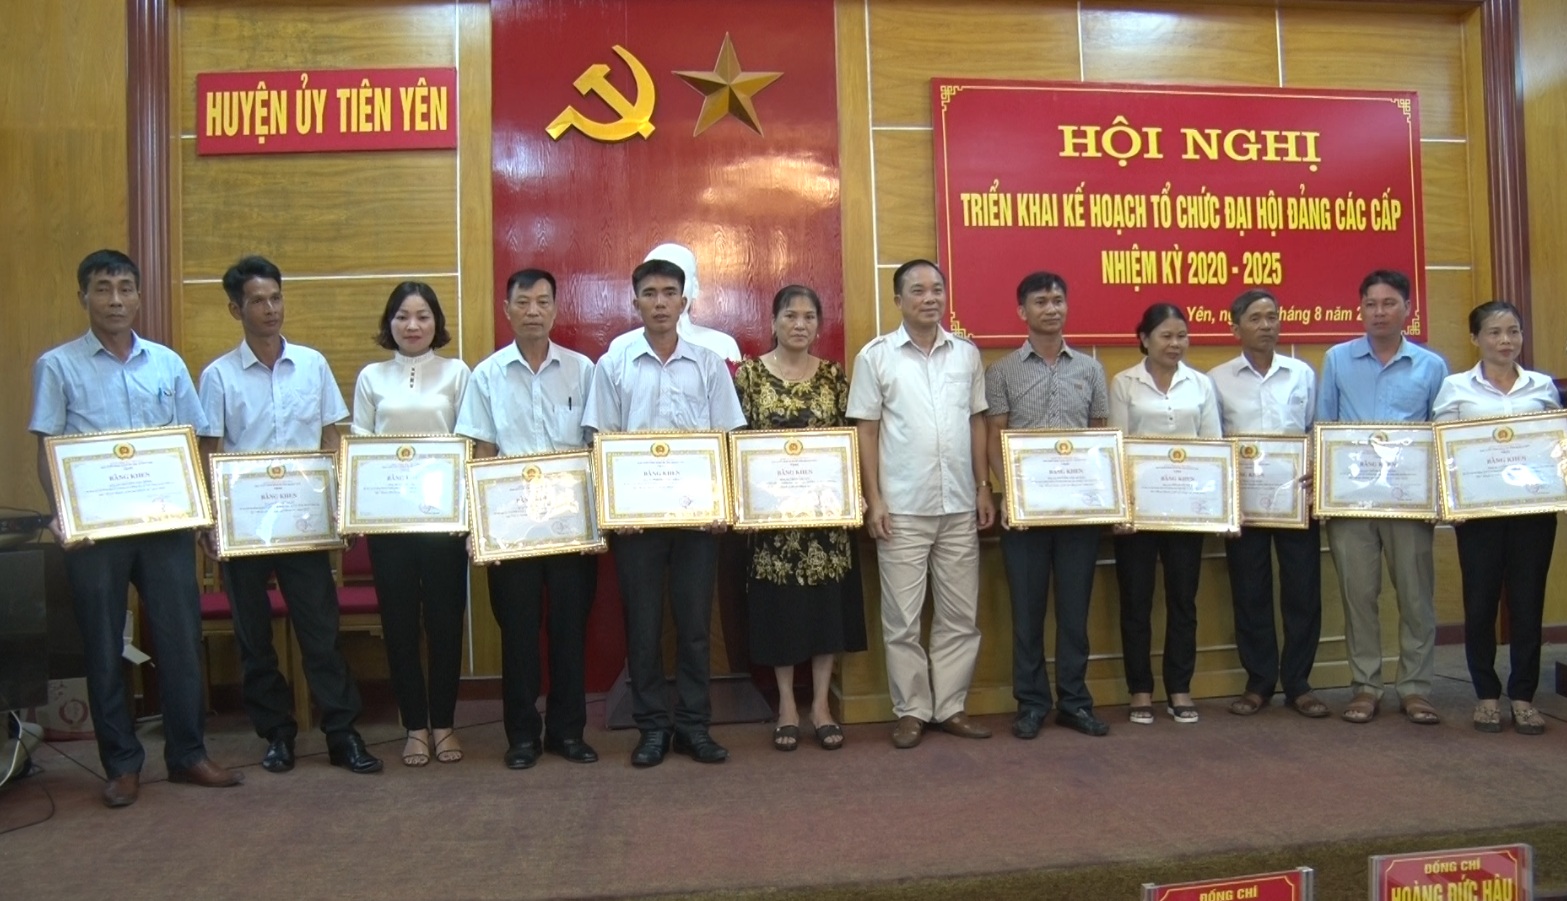 Lãnh đạo huyện Tiên Yênác đồng chí Bí thư chi bộ, trưởng thôn, khu phố hoàn thành xuất sắc nhiệm vụ năm 2018.